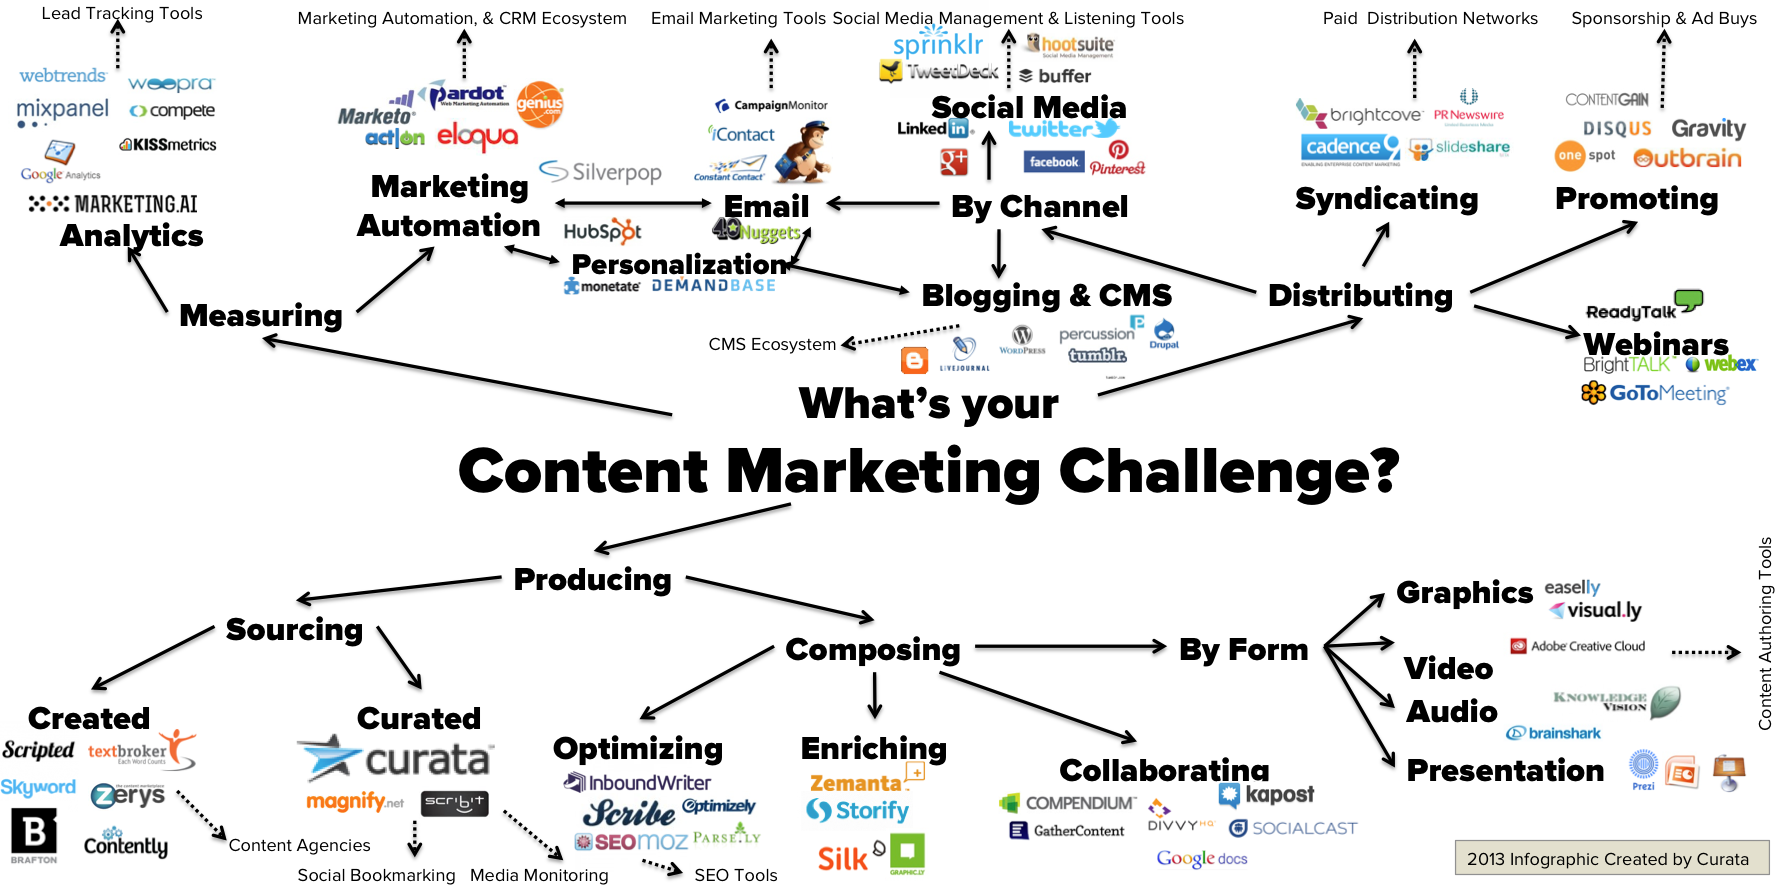 Curata content marketing tools list